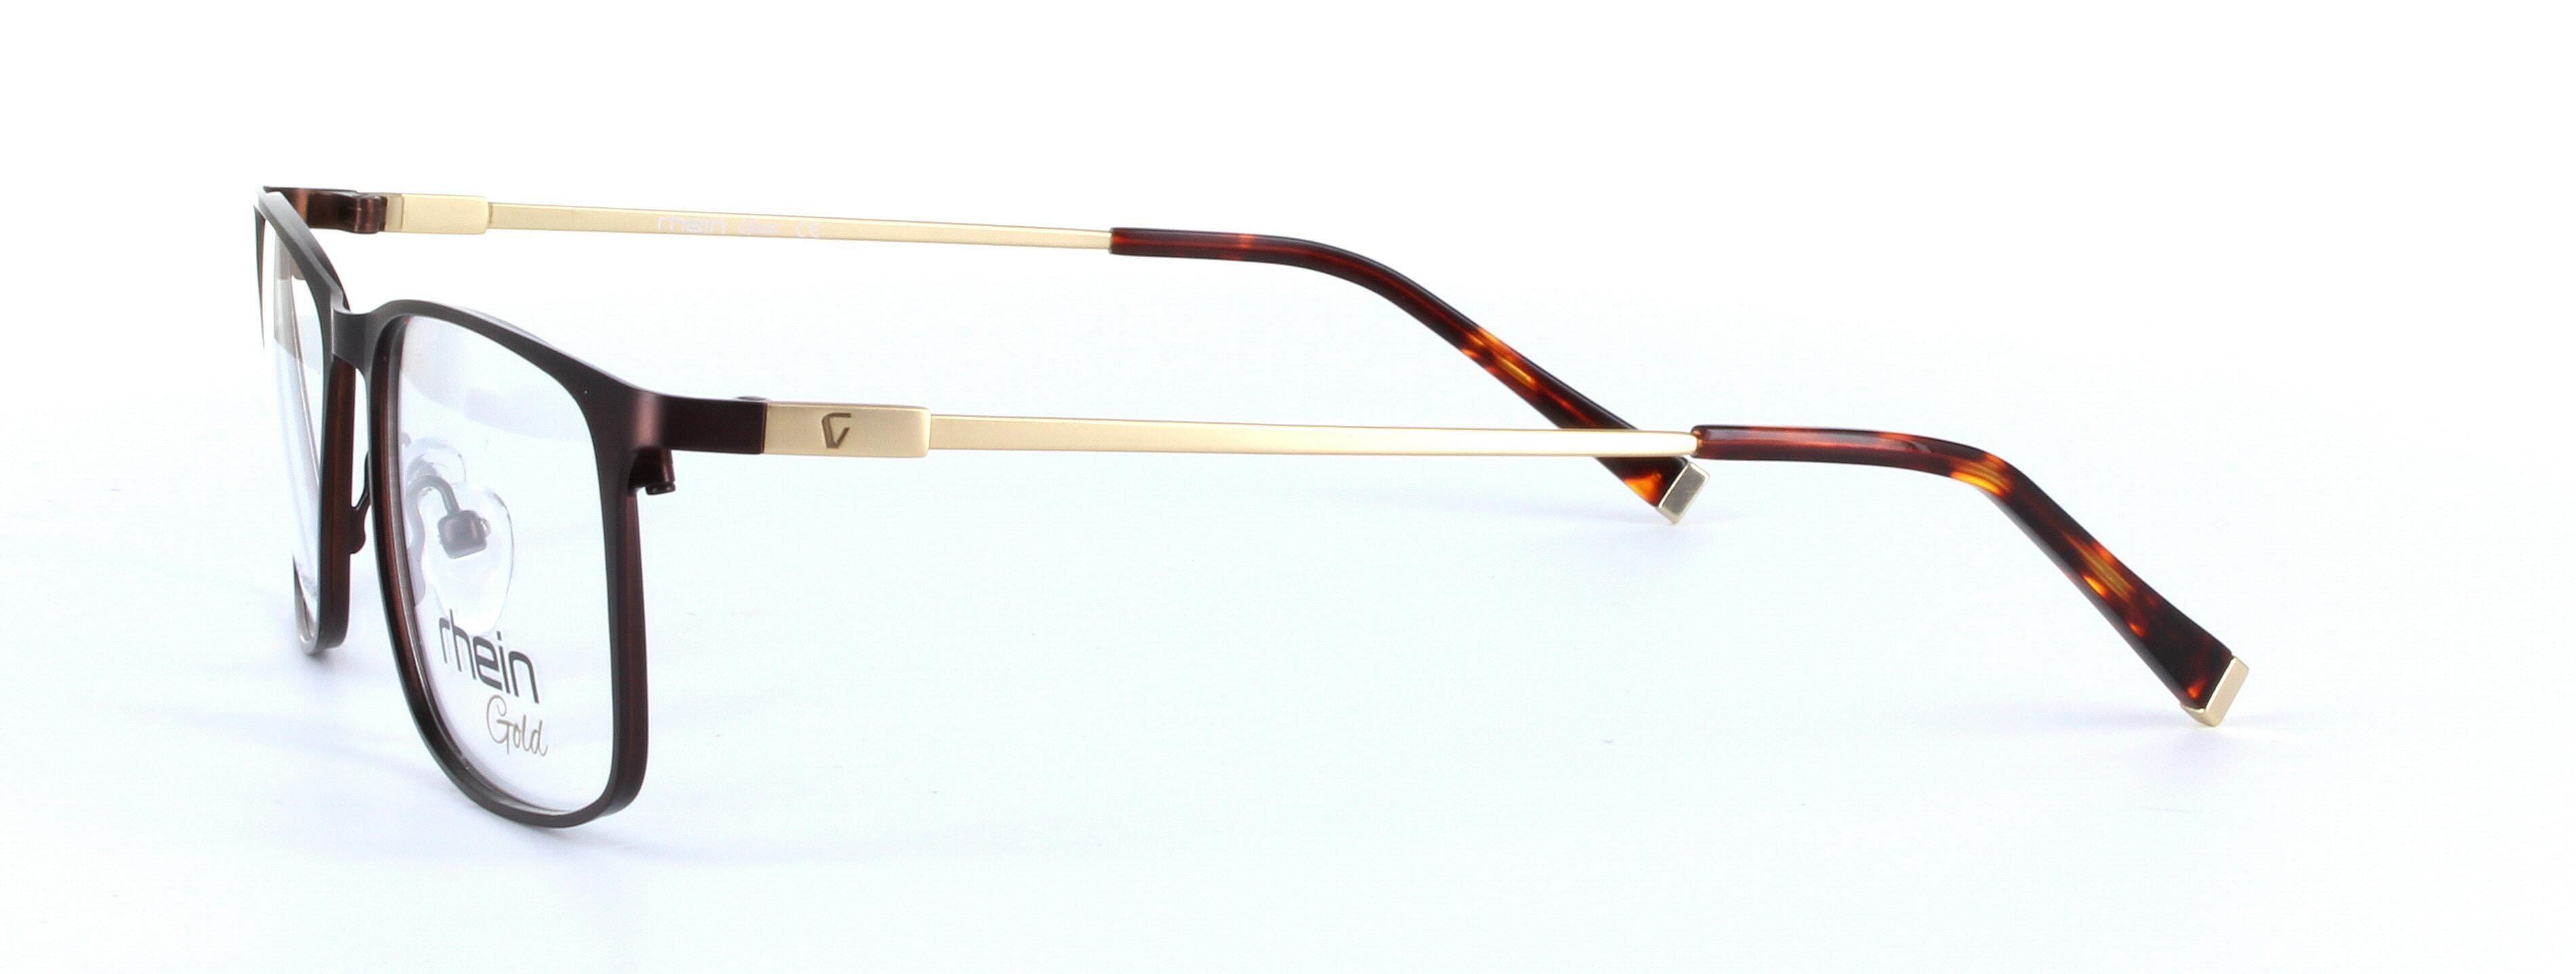 Canterbury Brown Full Rim Oval Rectangular Metal Glasses - Image View 2